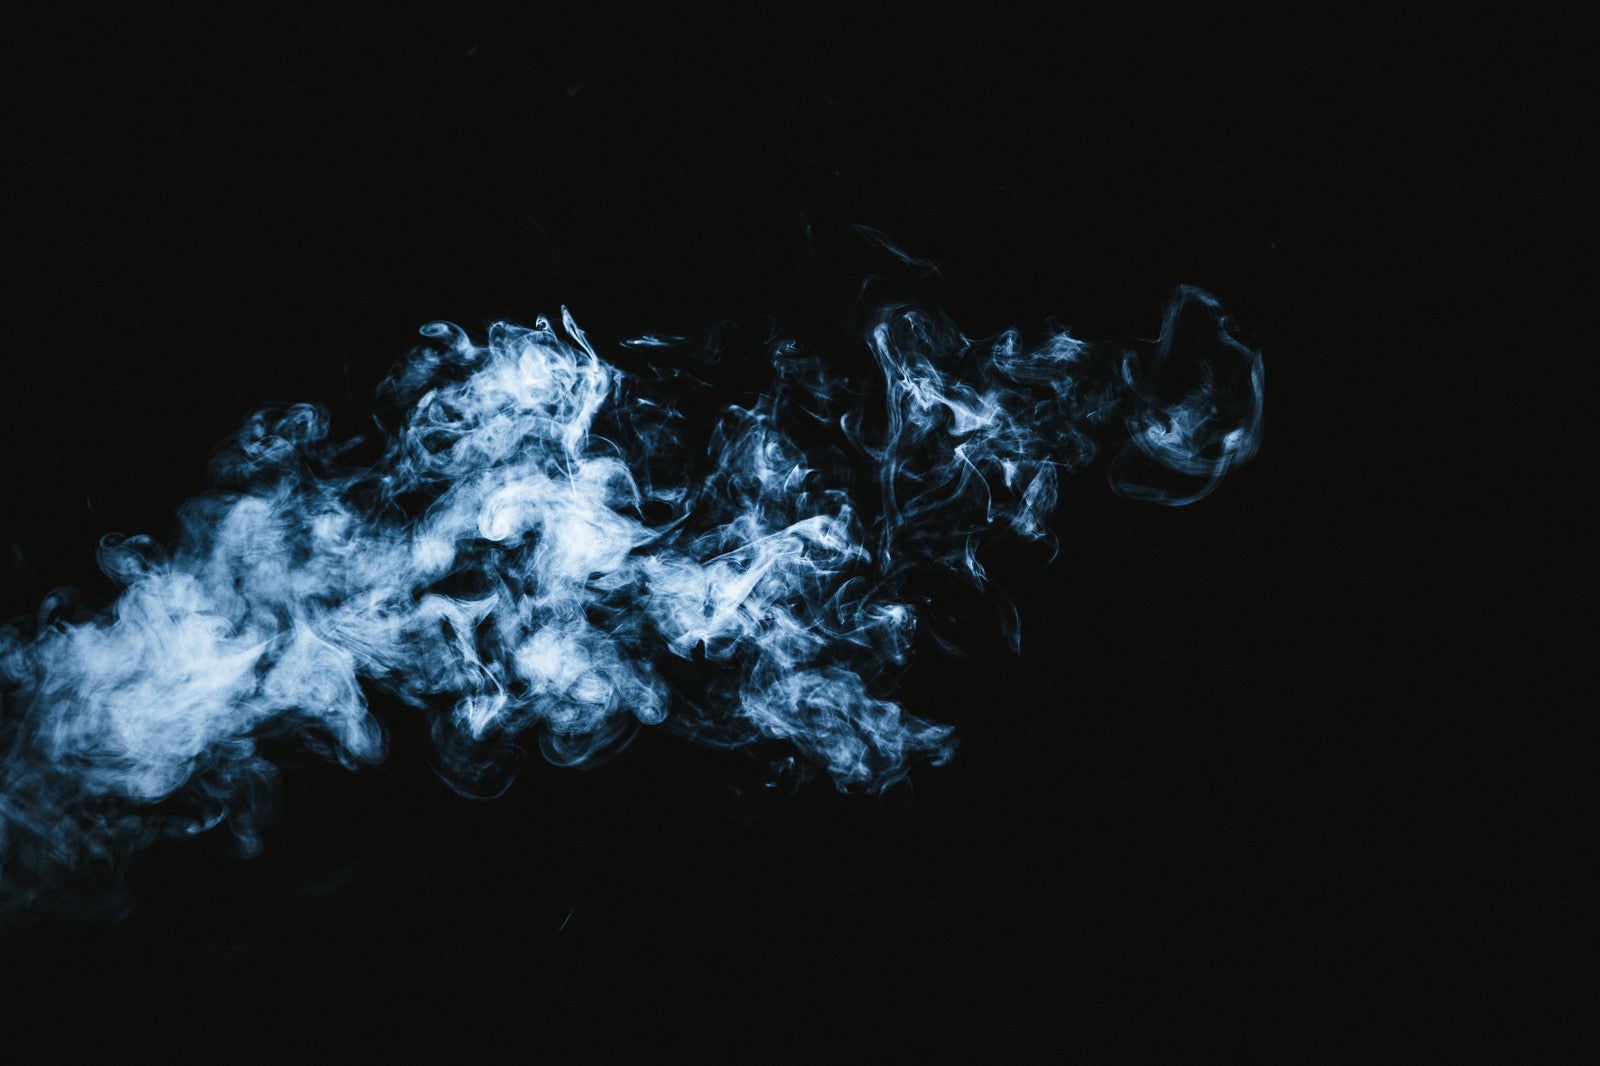 「霊魂のような煙」の写真